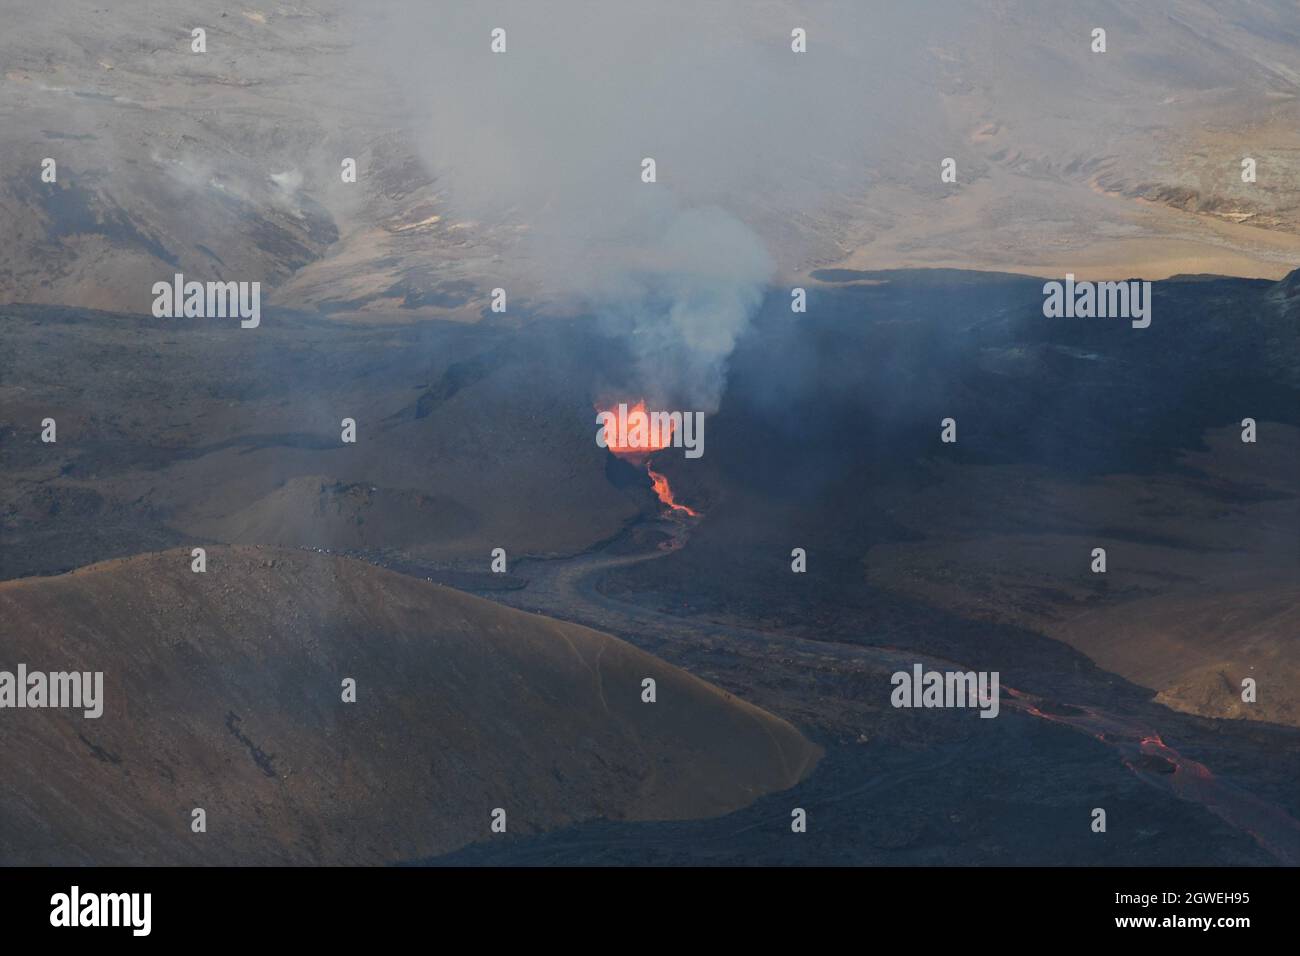 Il campo di lava a Fagradalfjall, Islanda. Bocca attiva con eruzione di lava fusa e aumento di gas vulcanico. Lava nera e cielo blu. Immagine aerea. Foto Stock